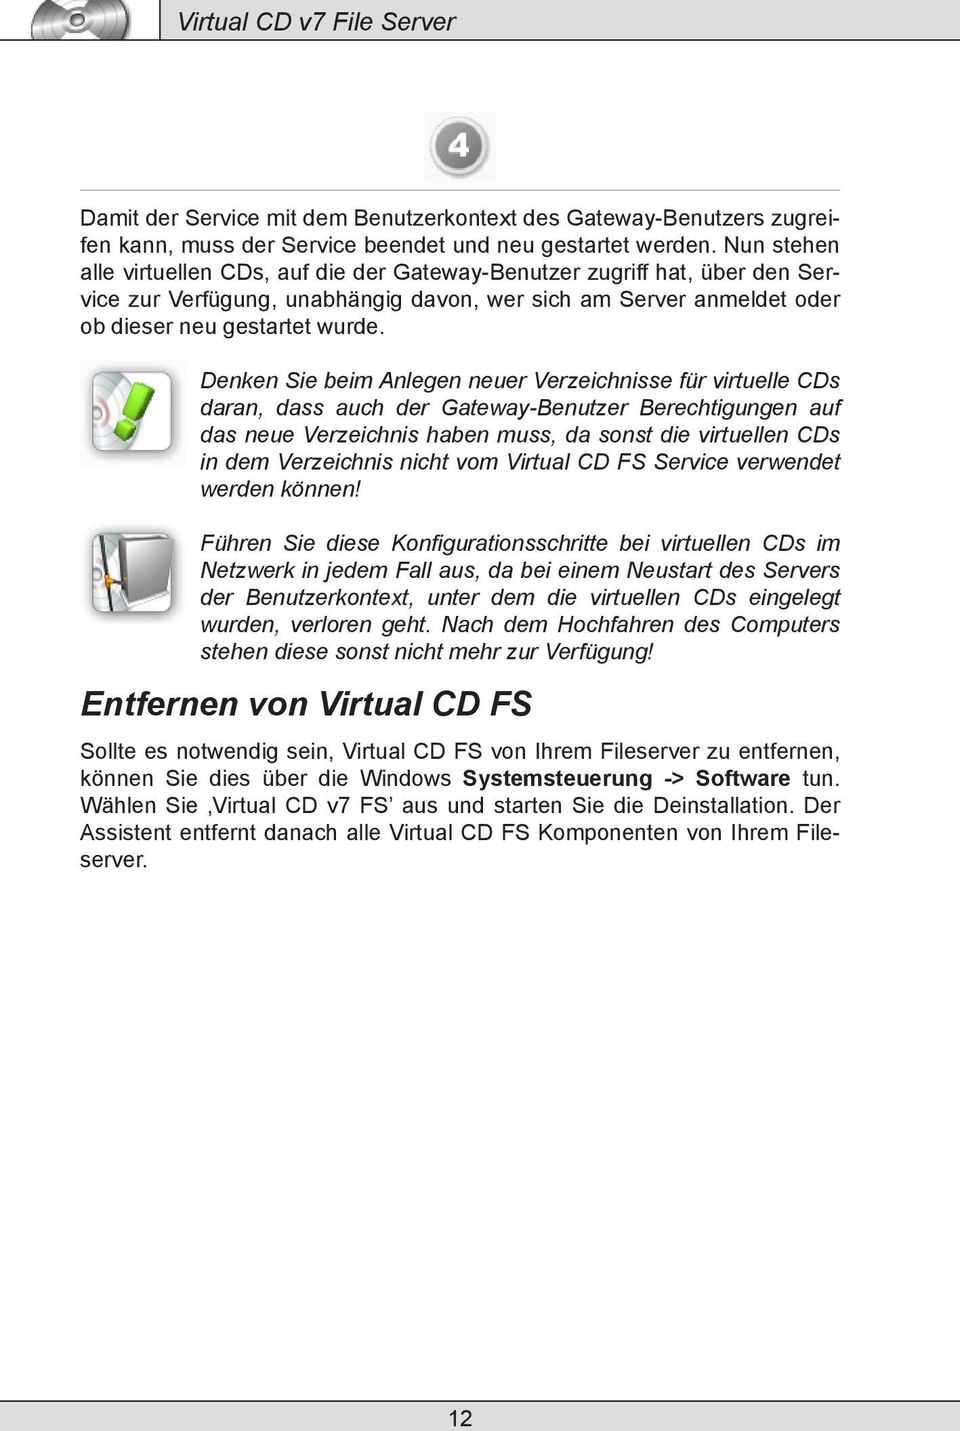 Denken Sie beim Anlegen neuer Verzeichnisse für virtuelle CDs daran, dass auch der Gateway-Benutzer Berechtigungen auf das neue Verzeichnis haben muss, da sonst die virtuellen CDs in dem Verzeichnis